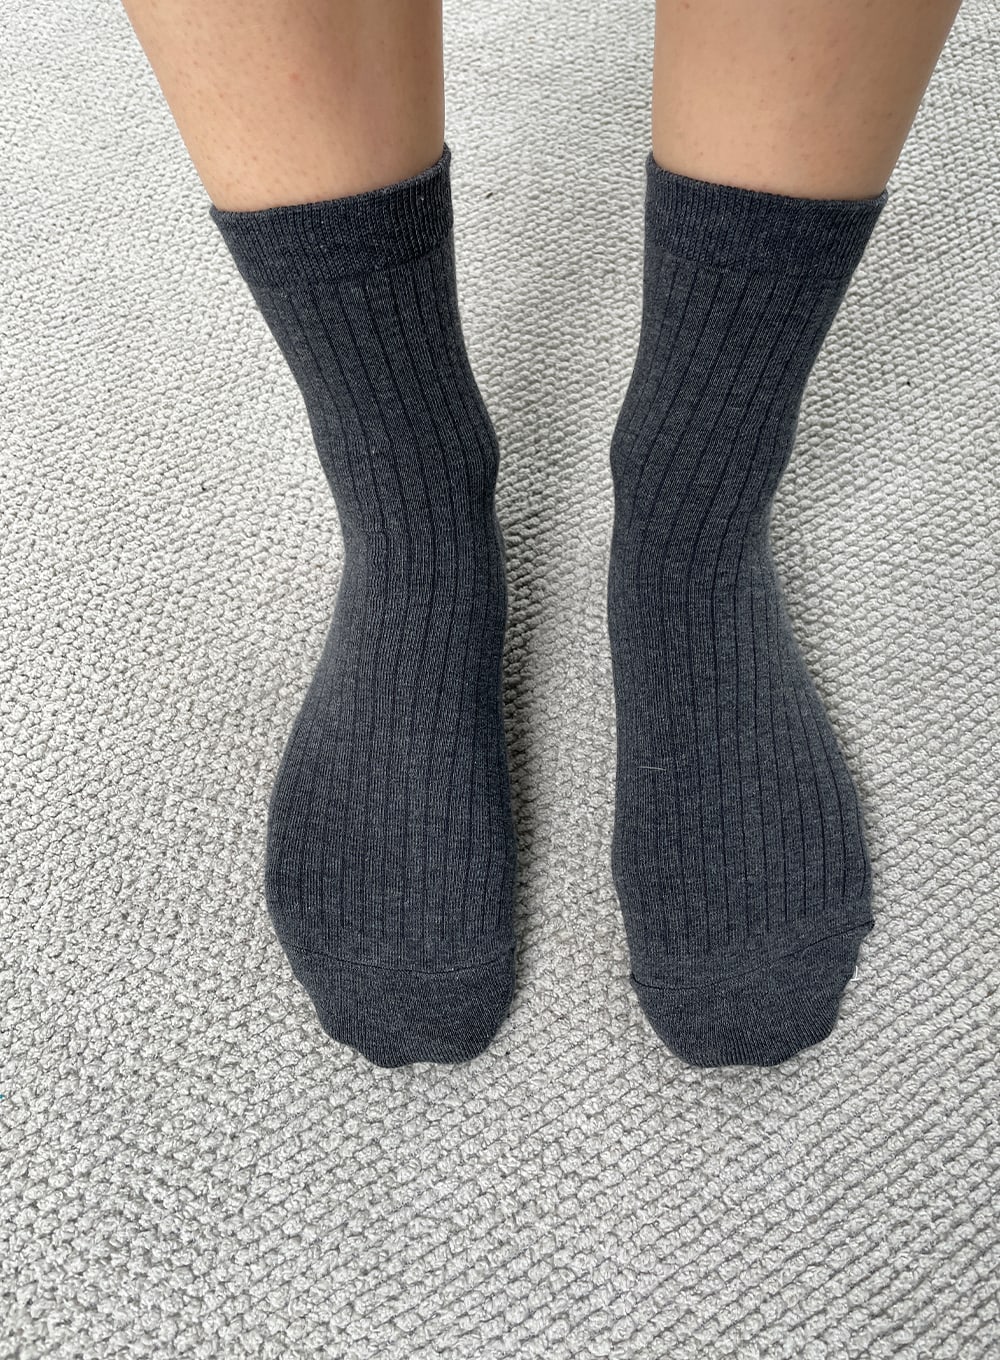 color-ribbed-knit-socks-iy323